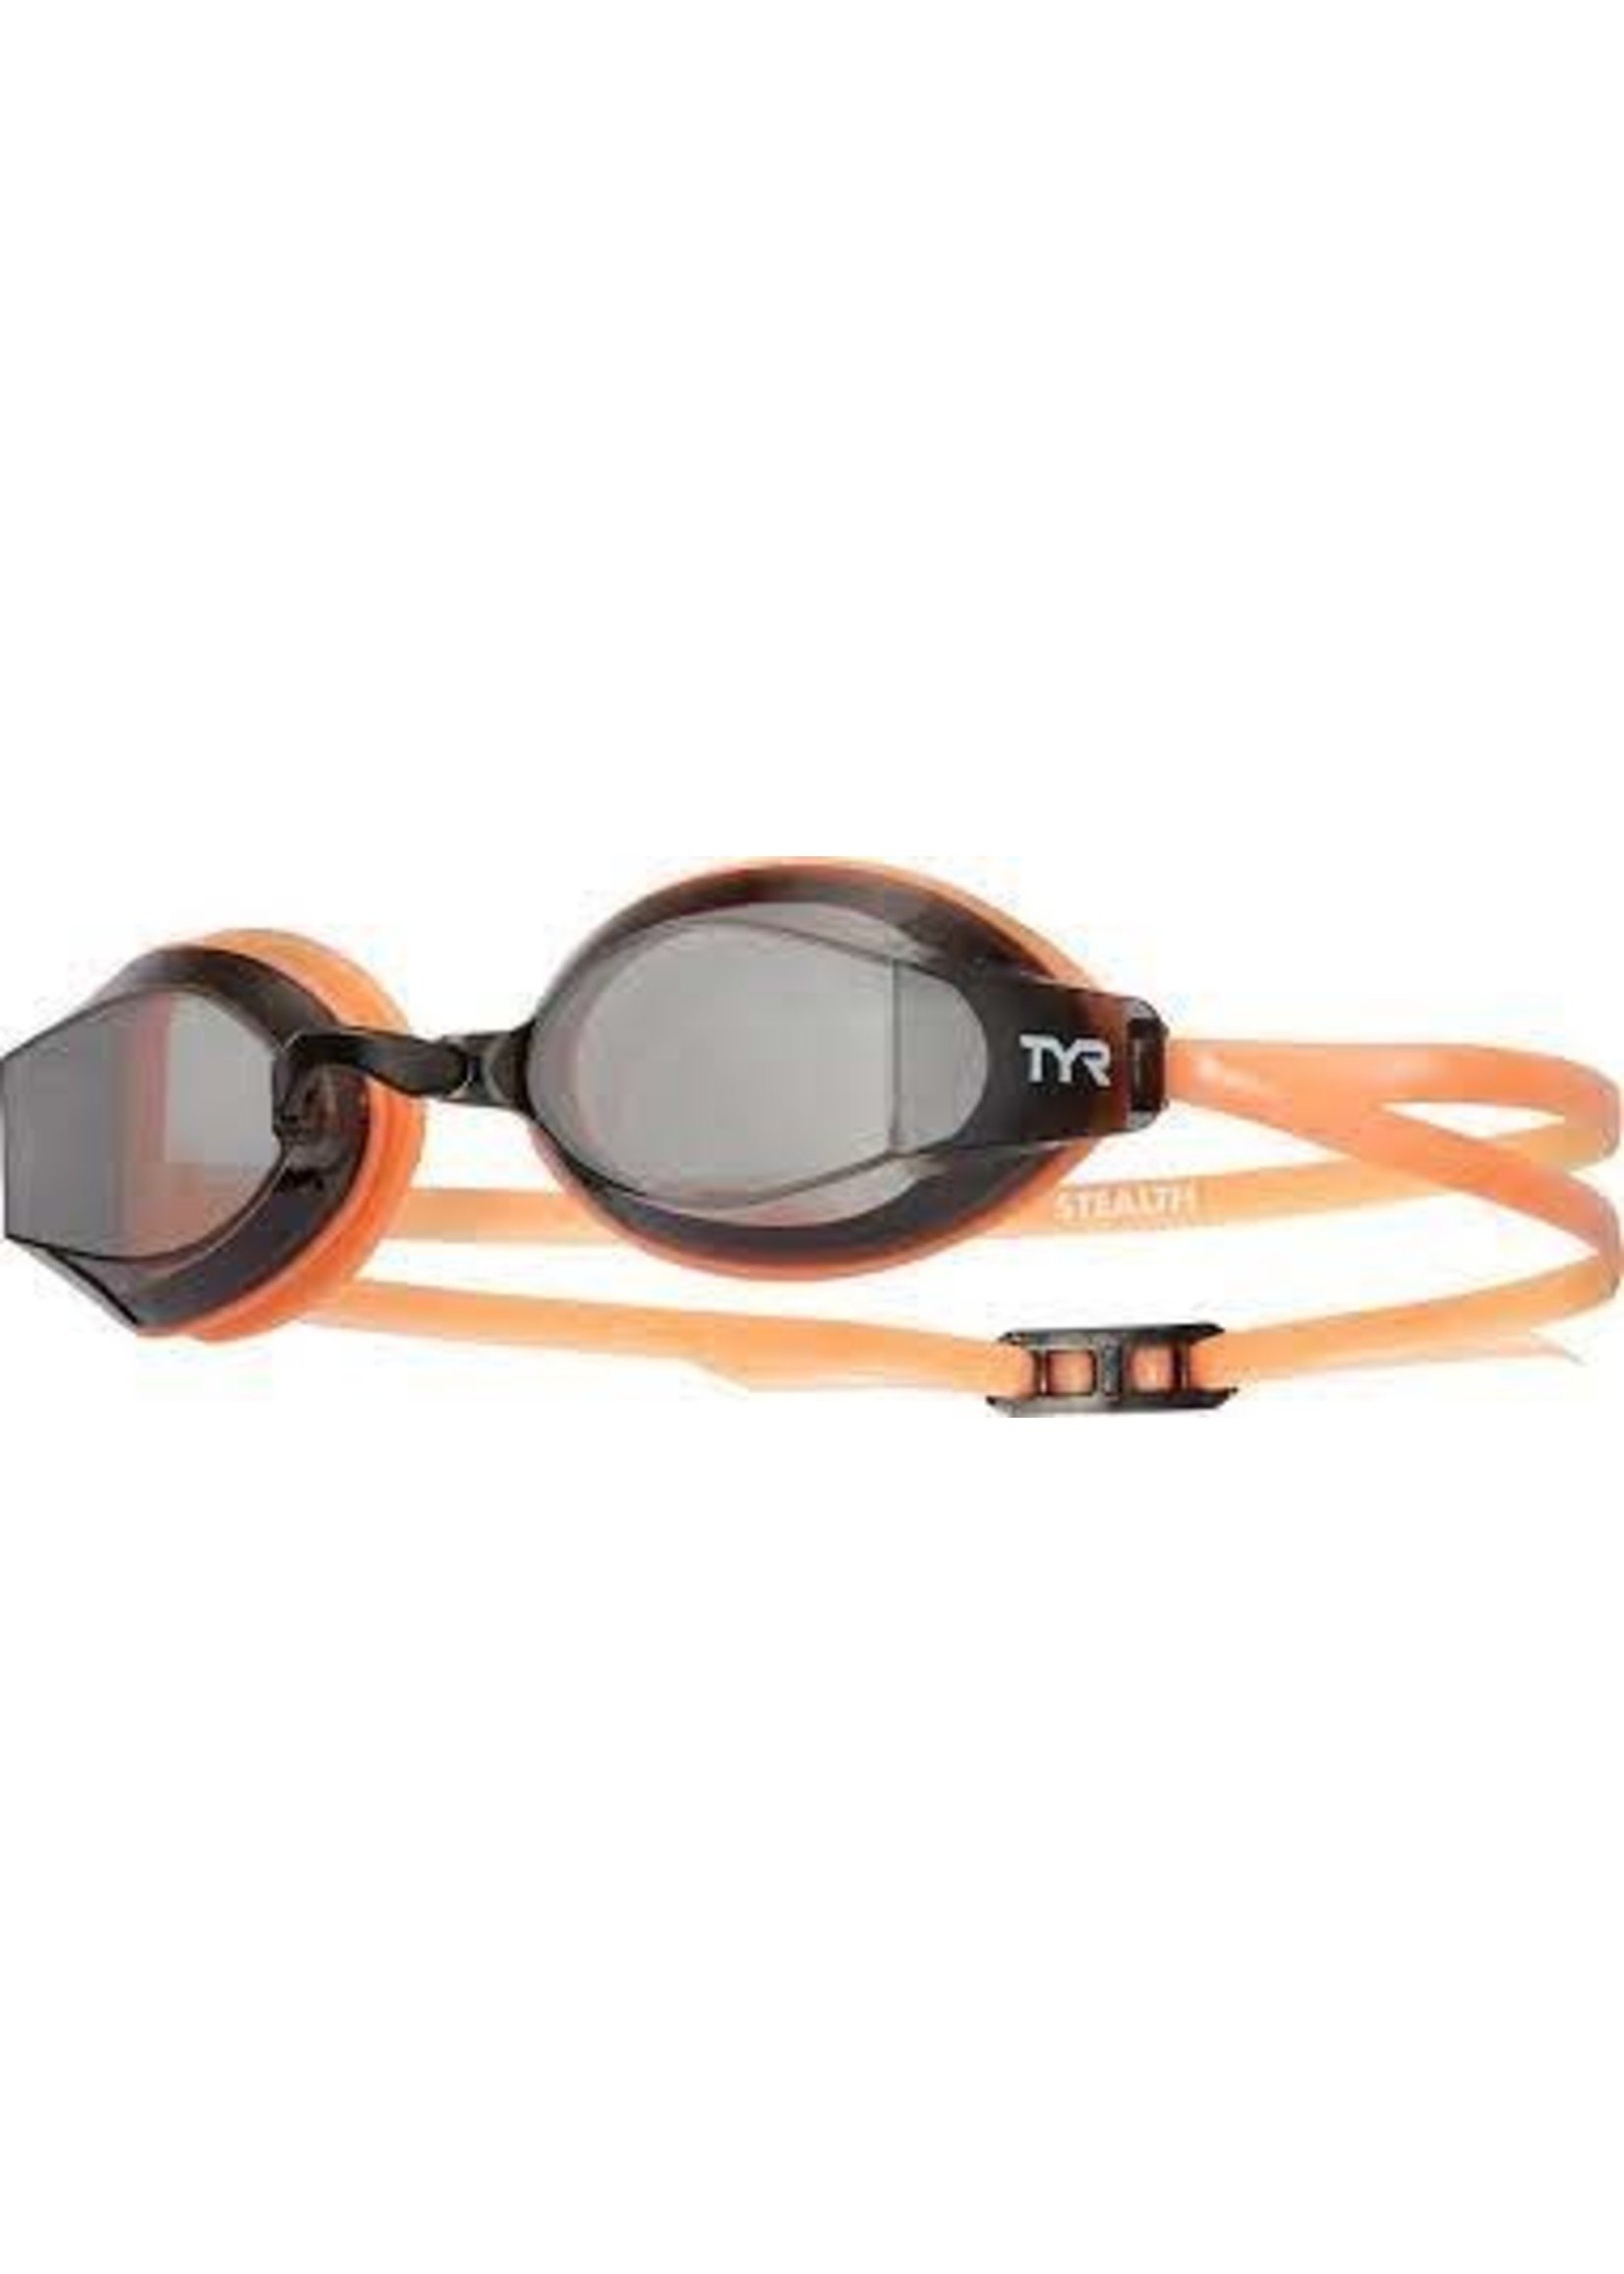 TYR TYR Blackops 140 EV Racing Goggle - Orange with Smoke Lens